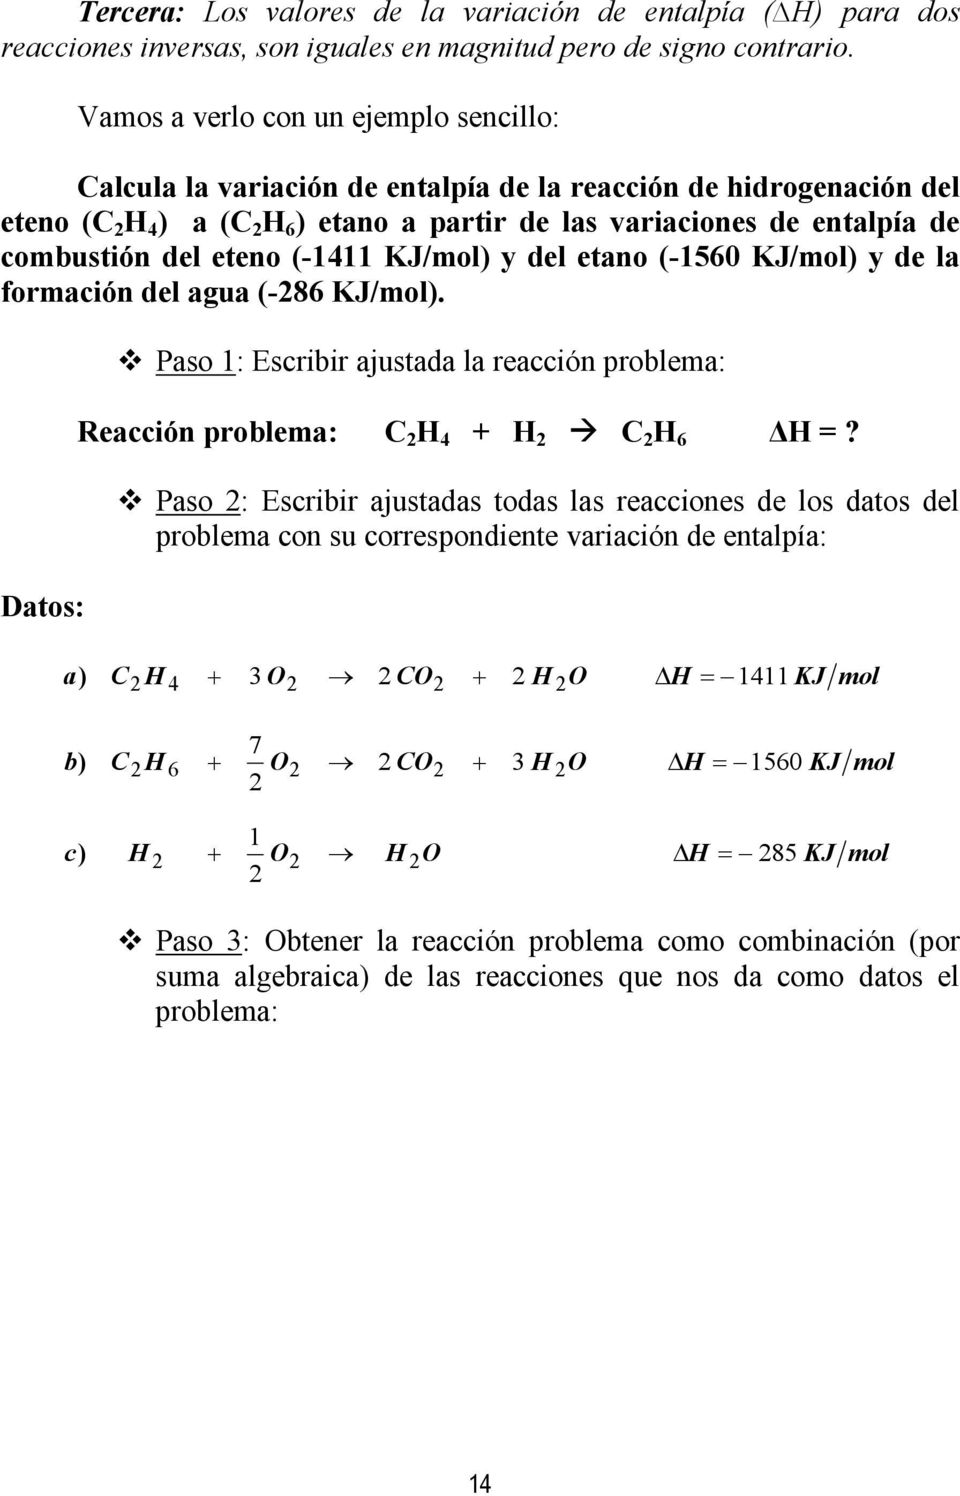 del eteno (-1411 KJ/mol) y del etano (-1560 KJ/mol) y de la formación del agua (-286 KJ/mol). Datos: Paso 1: Escribir ajustada la reacción problema: Reacción problema: C 2 H 4 + H 2 C 2 H 6 H =?